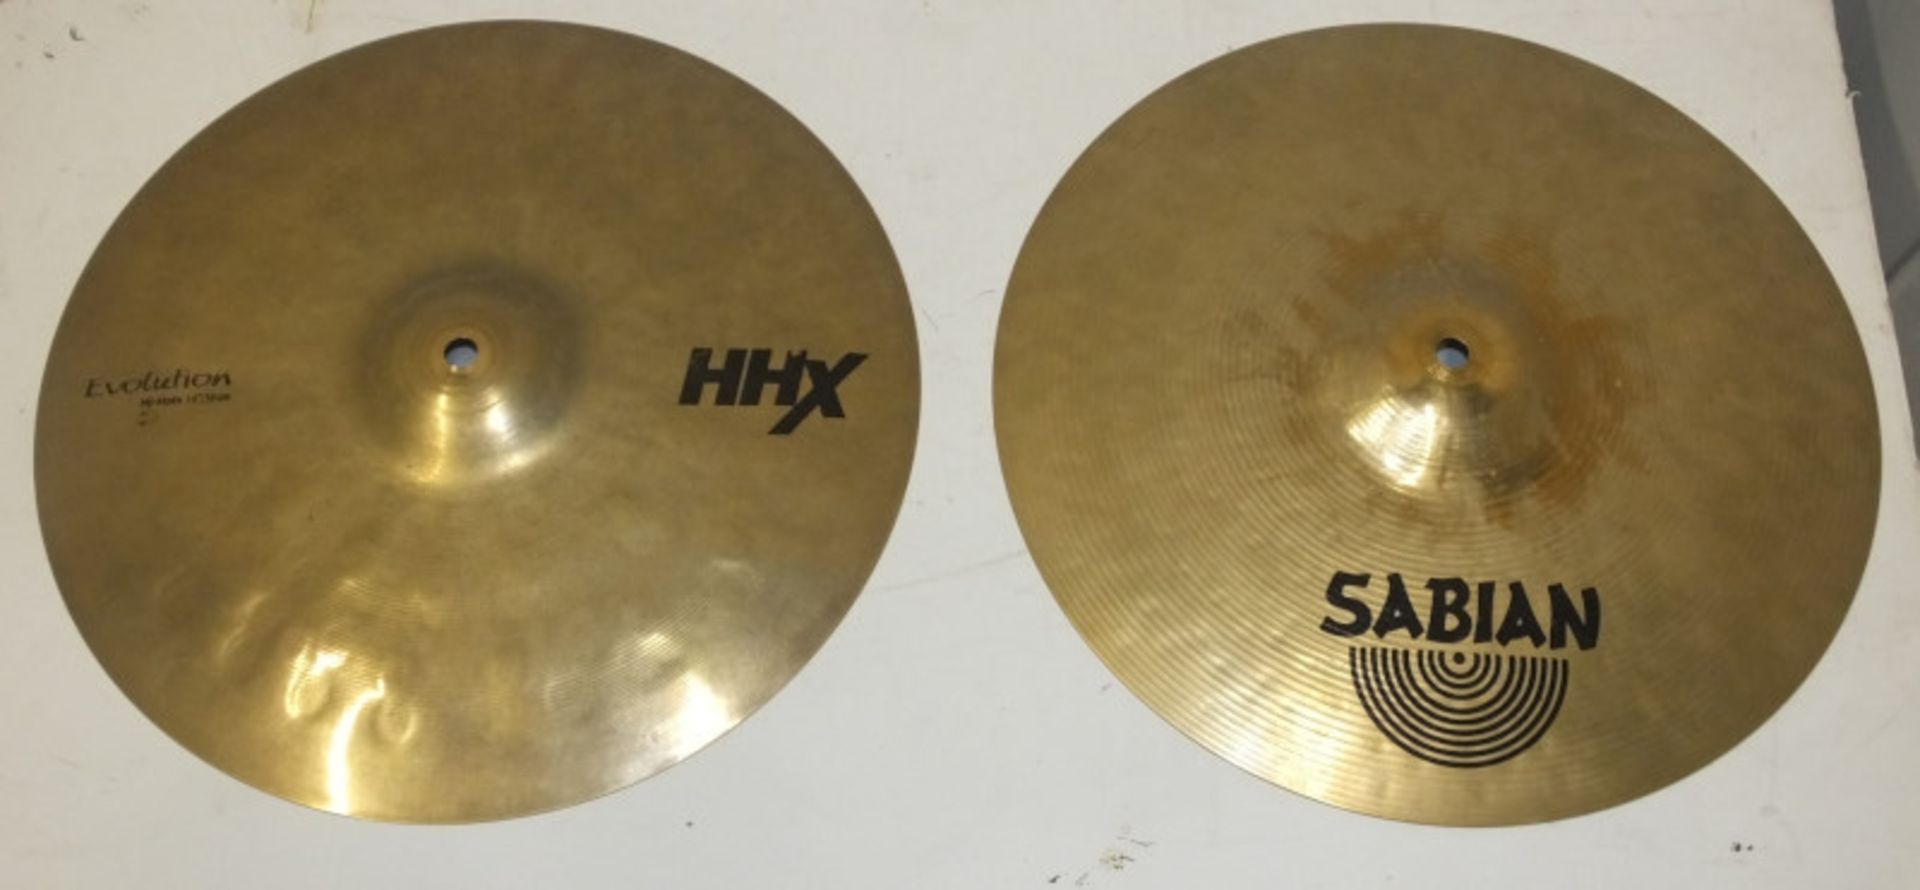 16" & 18" Zildjian A Custom Crash Cymbals (dent to 18" rim), Sabian 14" HHX Evolution Hi-Hats & more - Image 5 of 9